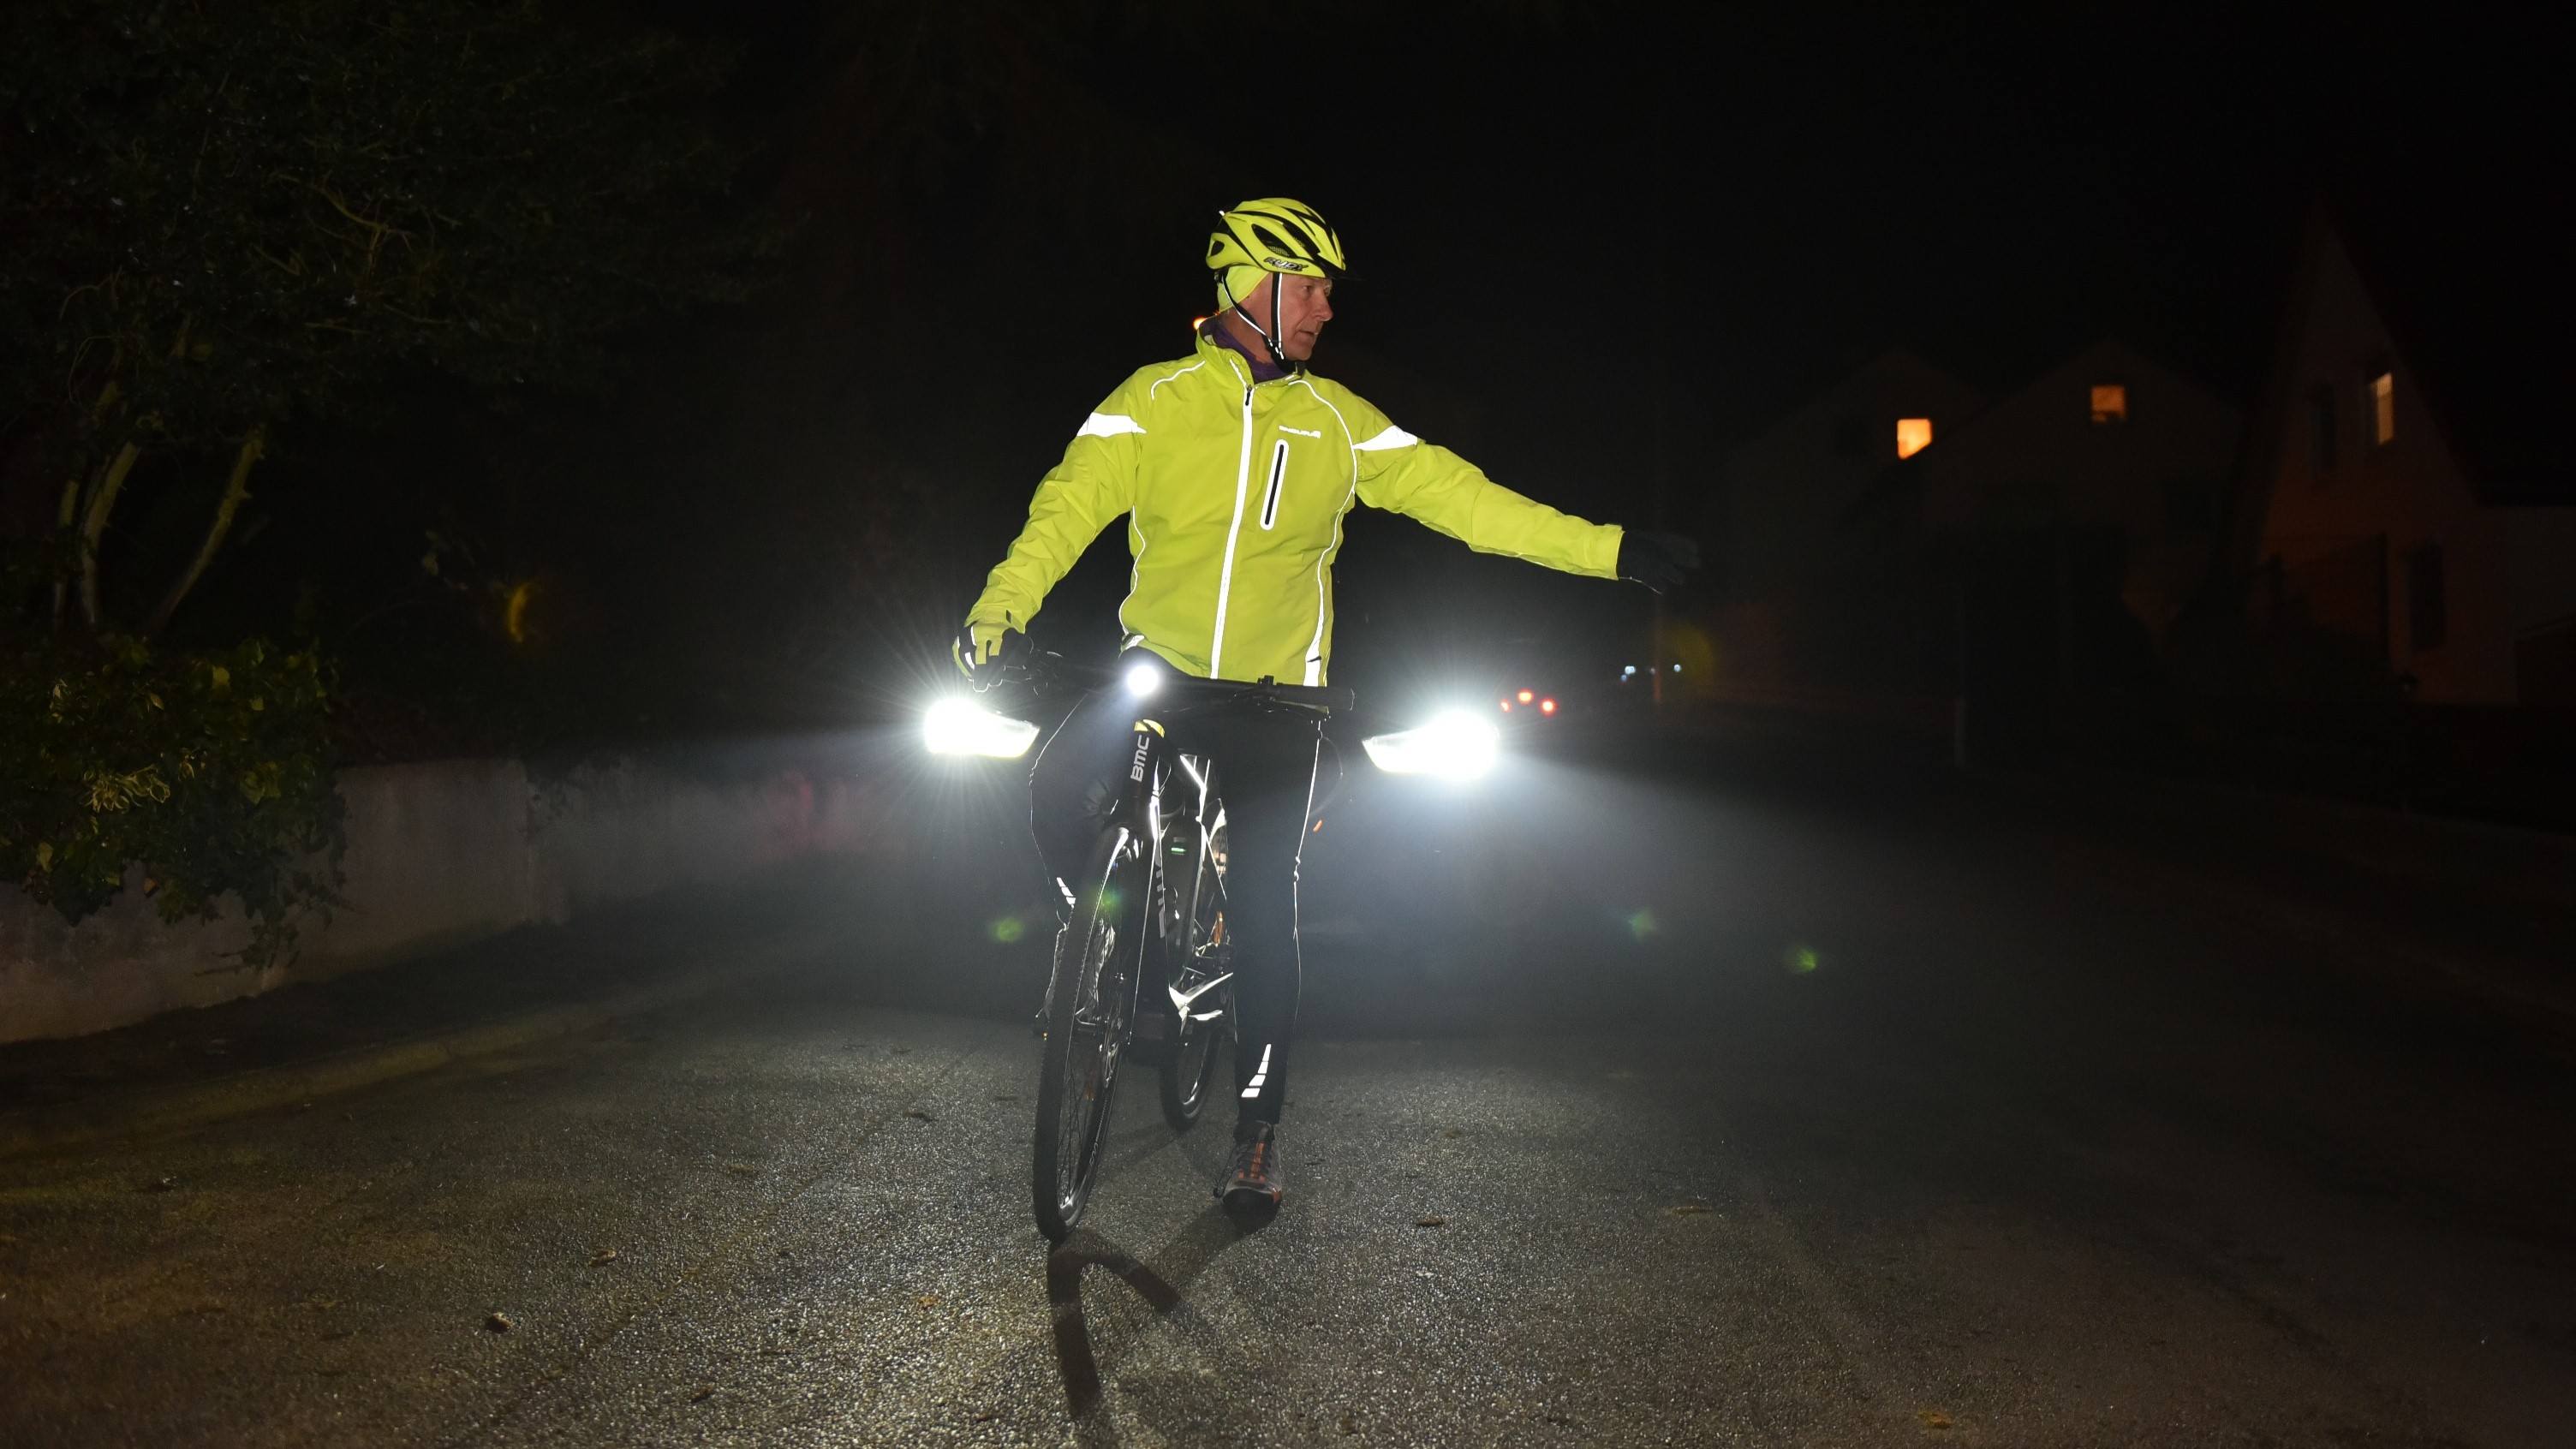 Dunkelheit: Reflektoren helfen Fußgängern und Radfahrern